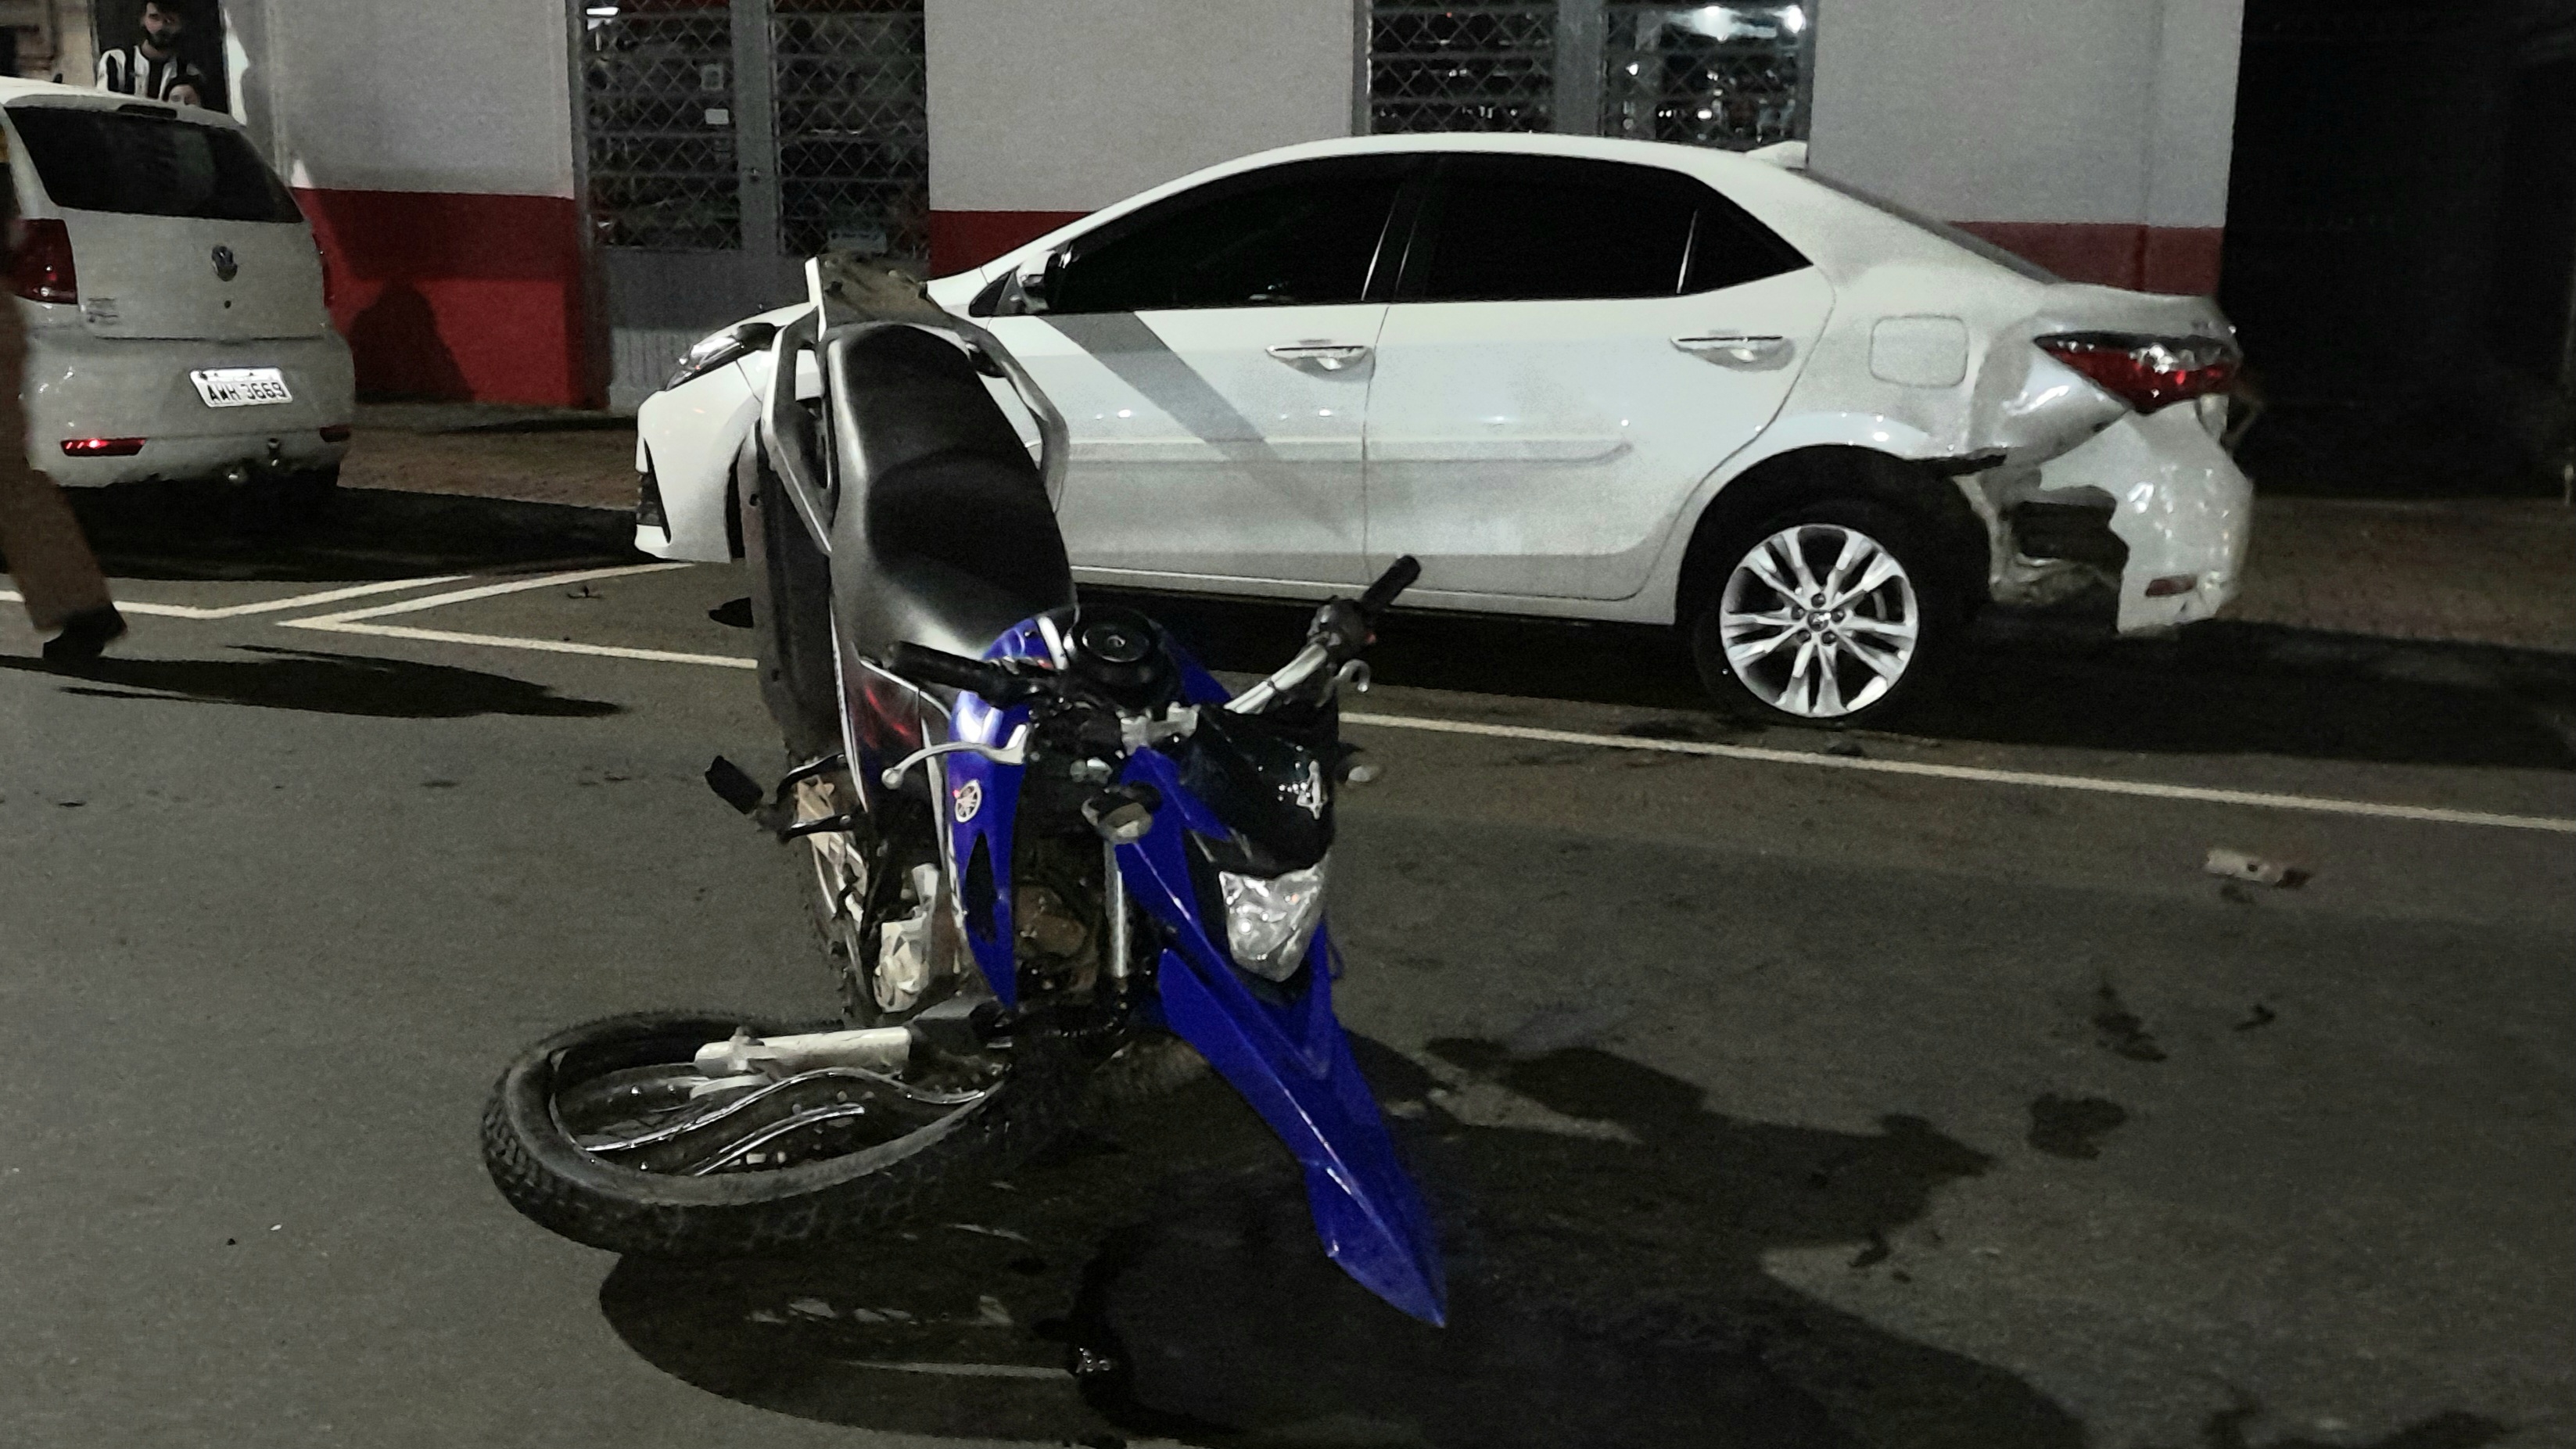 Homem fica gravemente ferido ao colidir motocicleta em automóvel estacionado